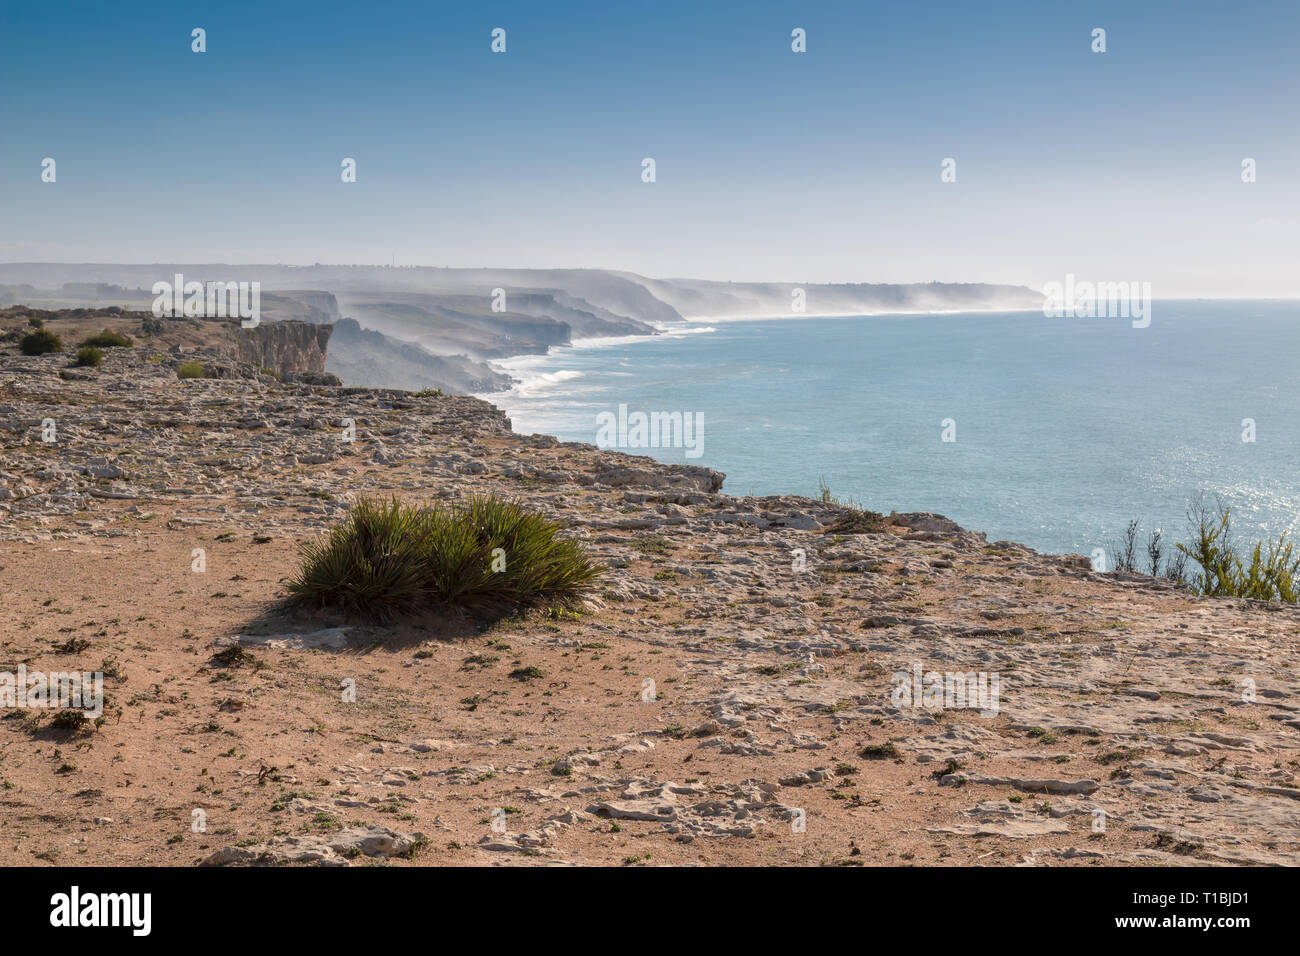 Vue du bord de la falaise de l'autre les falaises, en partie caché dans un brouillard au cours d'une marée haute. Automne bleu ciel. Horizon de l'océan Atlantique. Banque D'Images